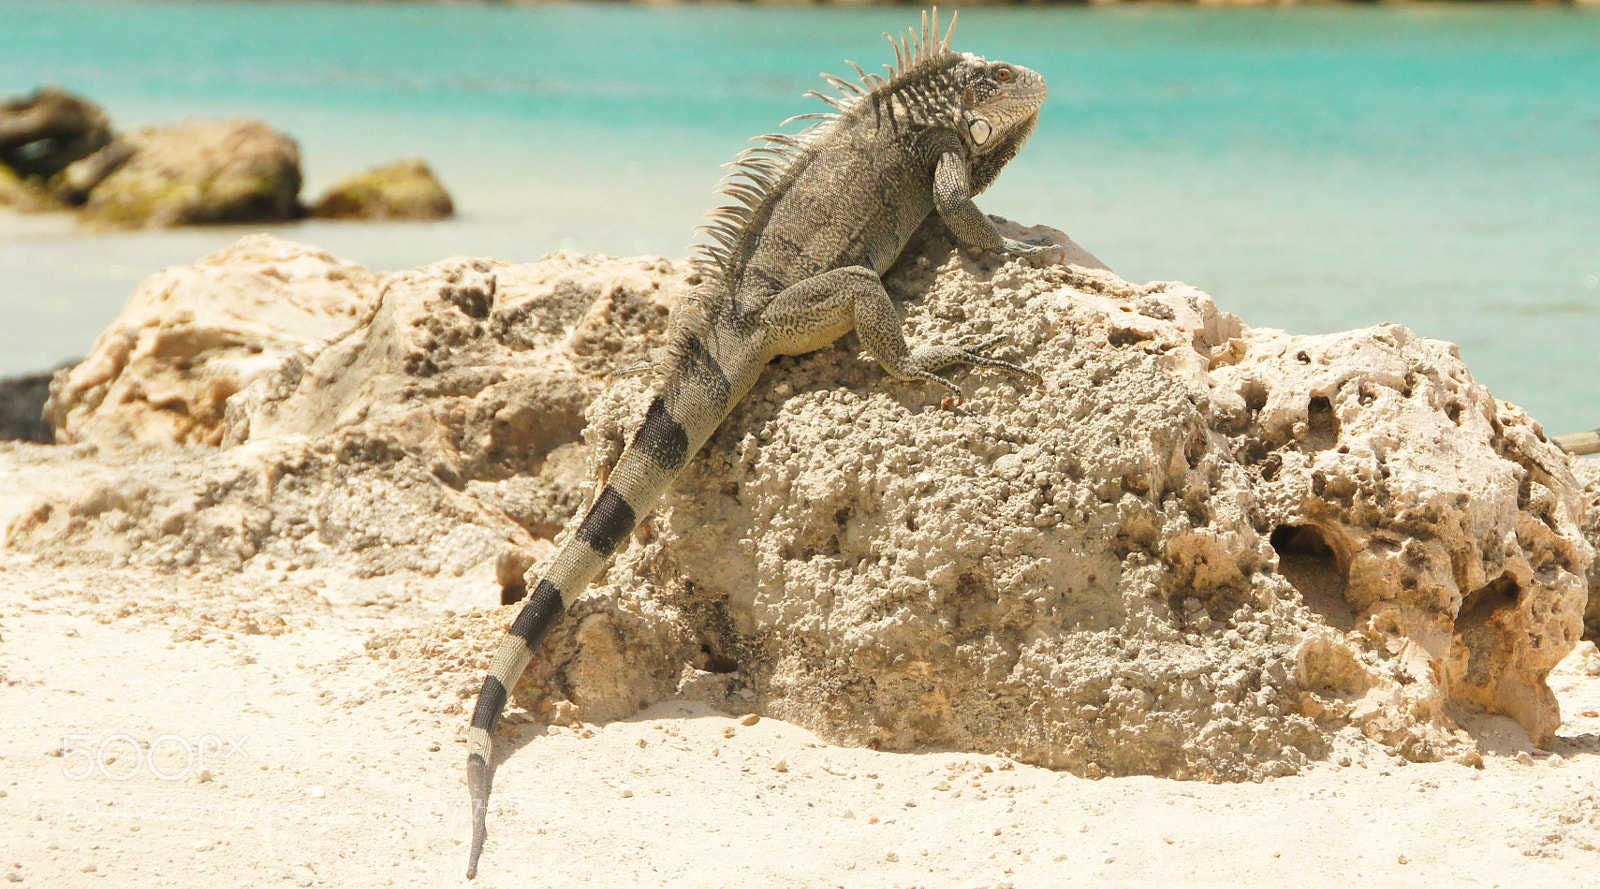 Sony SLT-A55 (SLT-A55V) sample photo. Iguana iguana photography